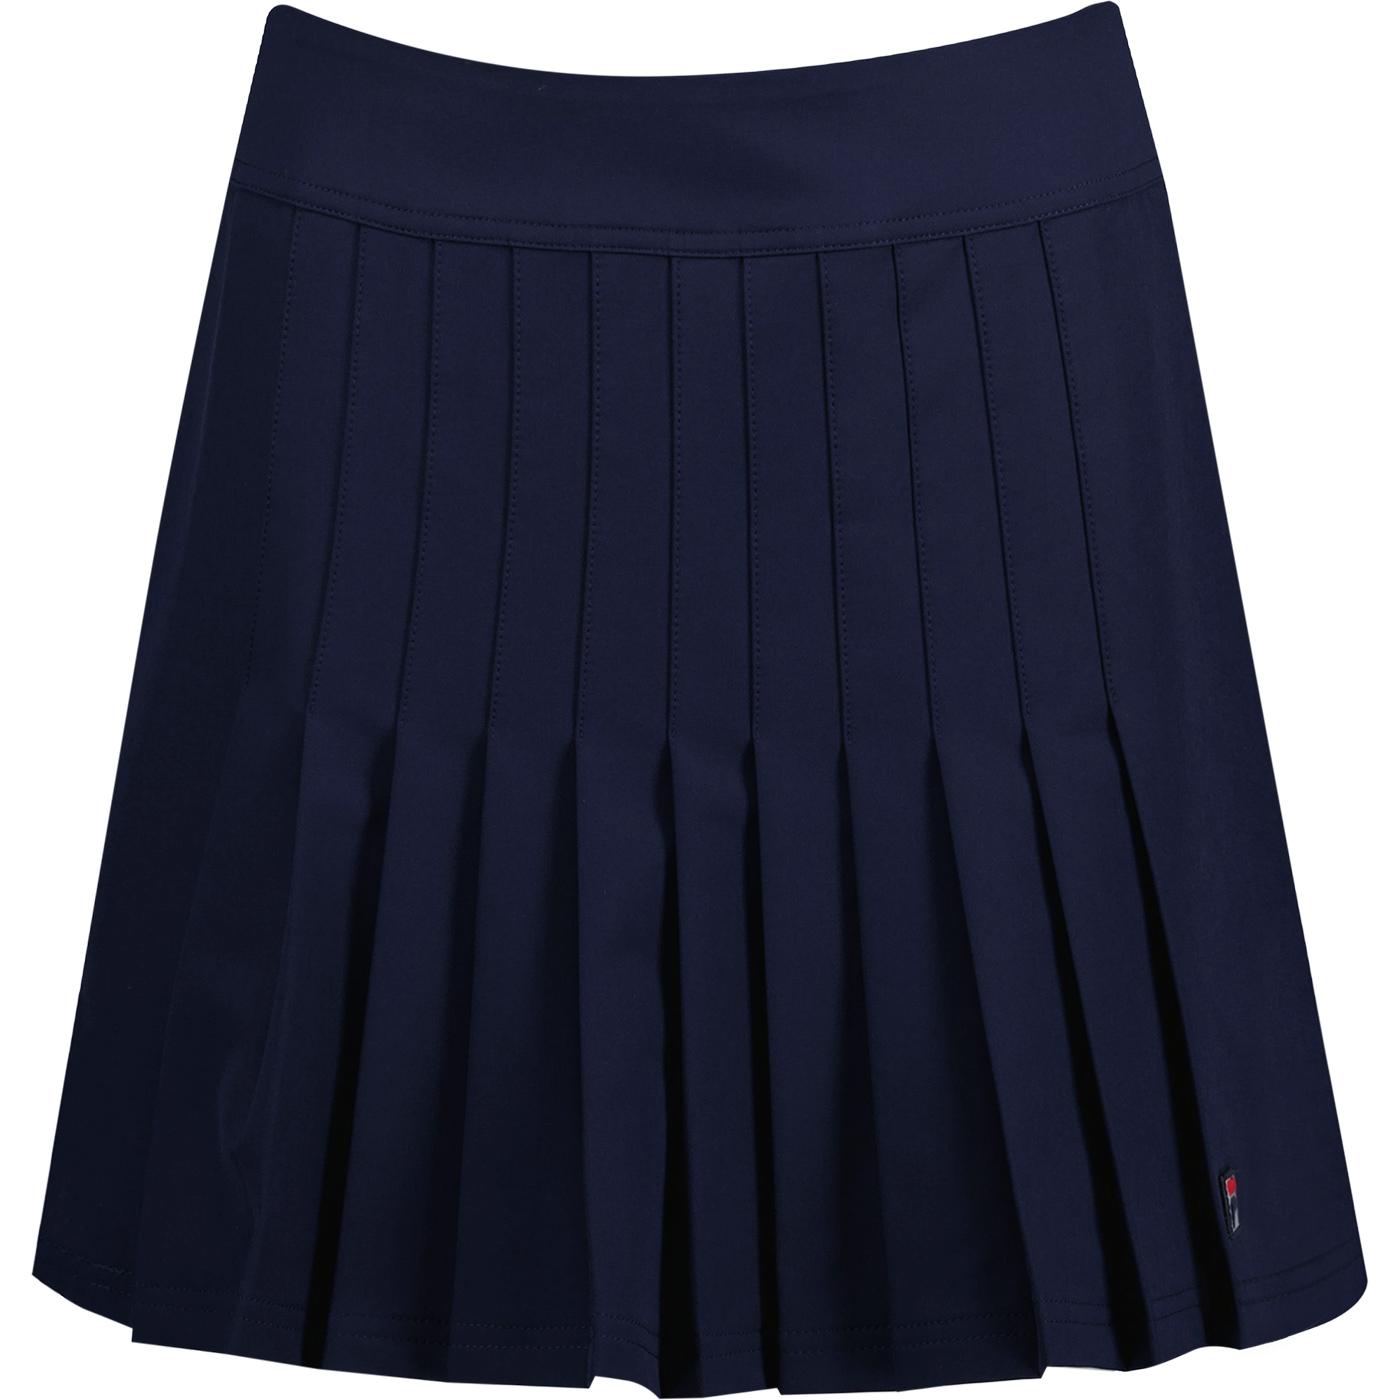 Amy FILA VINTAGE Retro 70s Pleated Tennis Skirt N